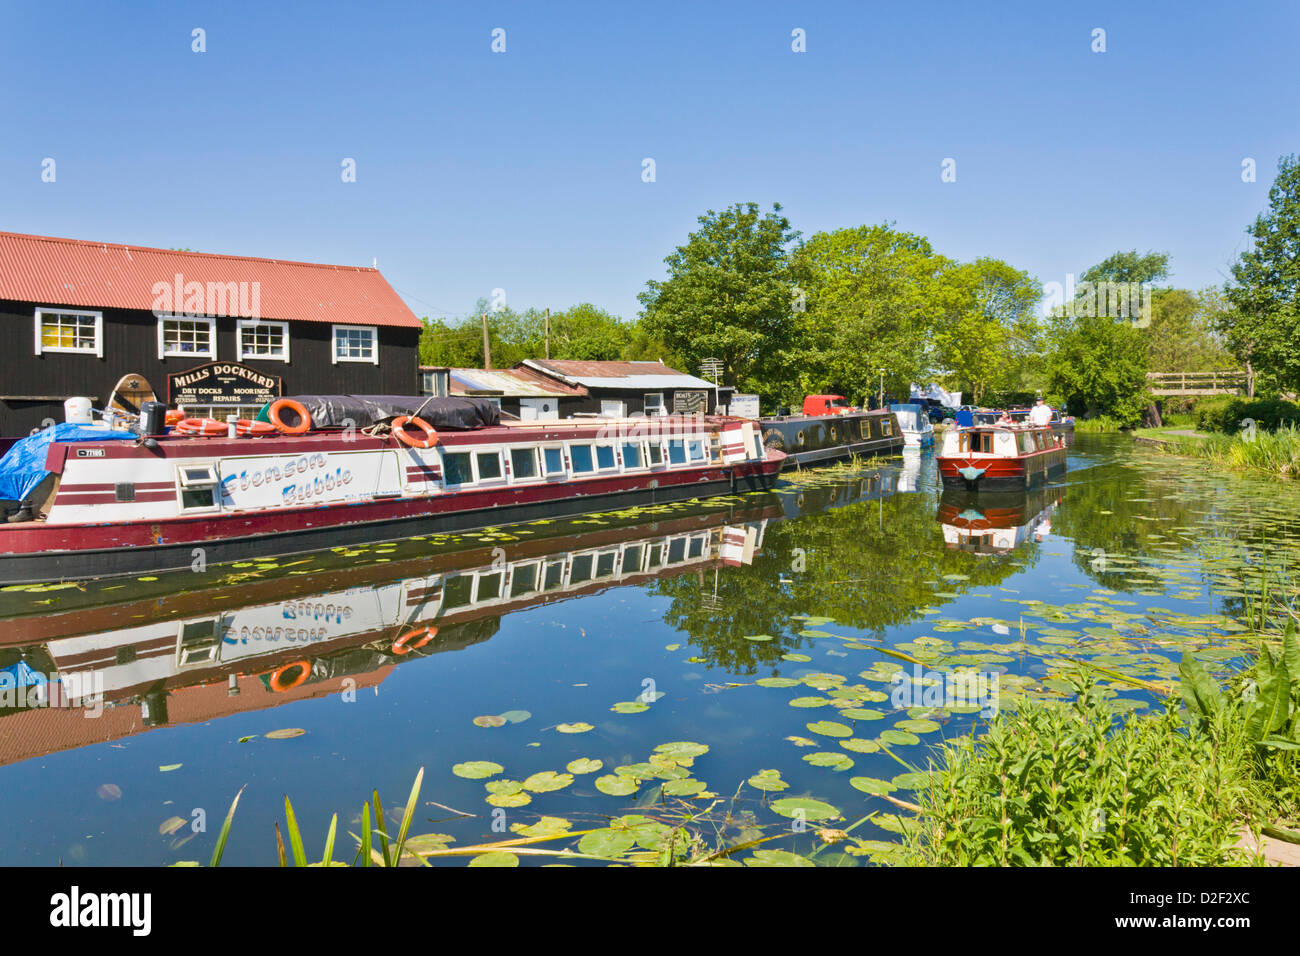 Strette barche o chiatte sul Erewash canal a Sawley nei pressi di Long Eaton, Derbyshire, Inghilterra, GB, Regno Unito e Unione europea, Europa Foto Stock